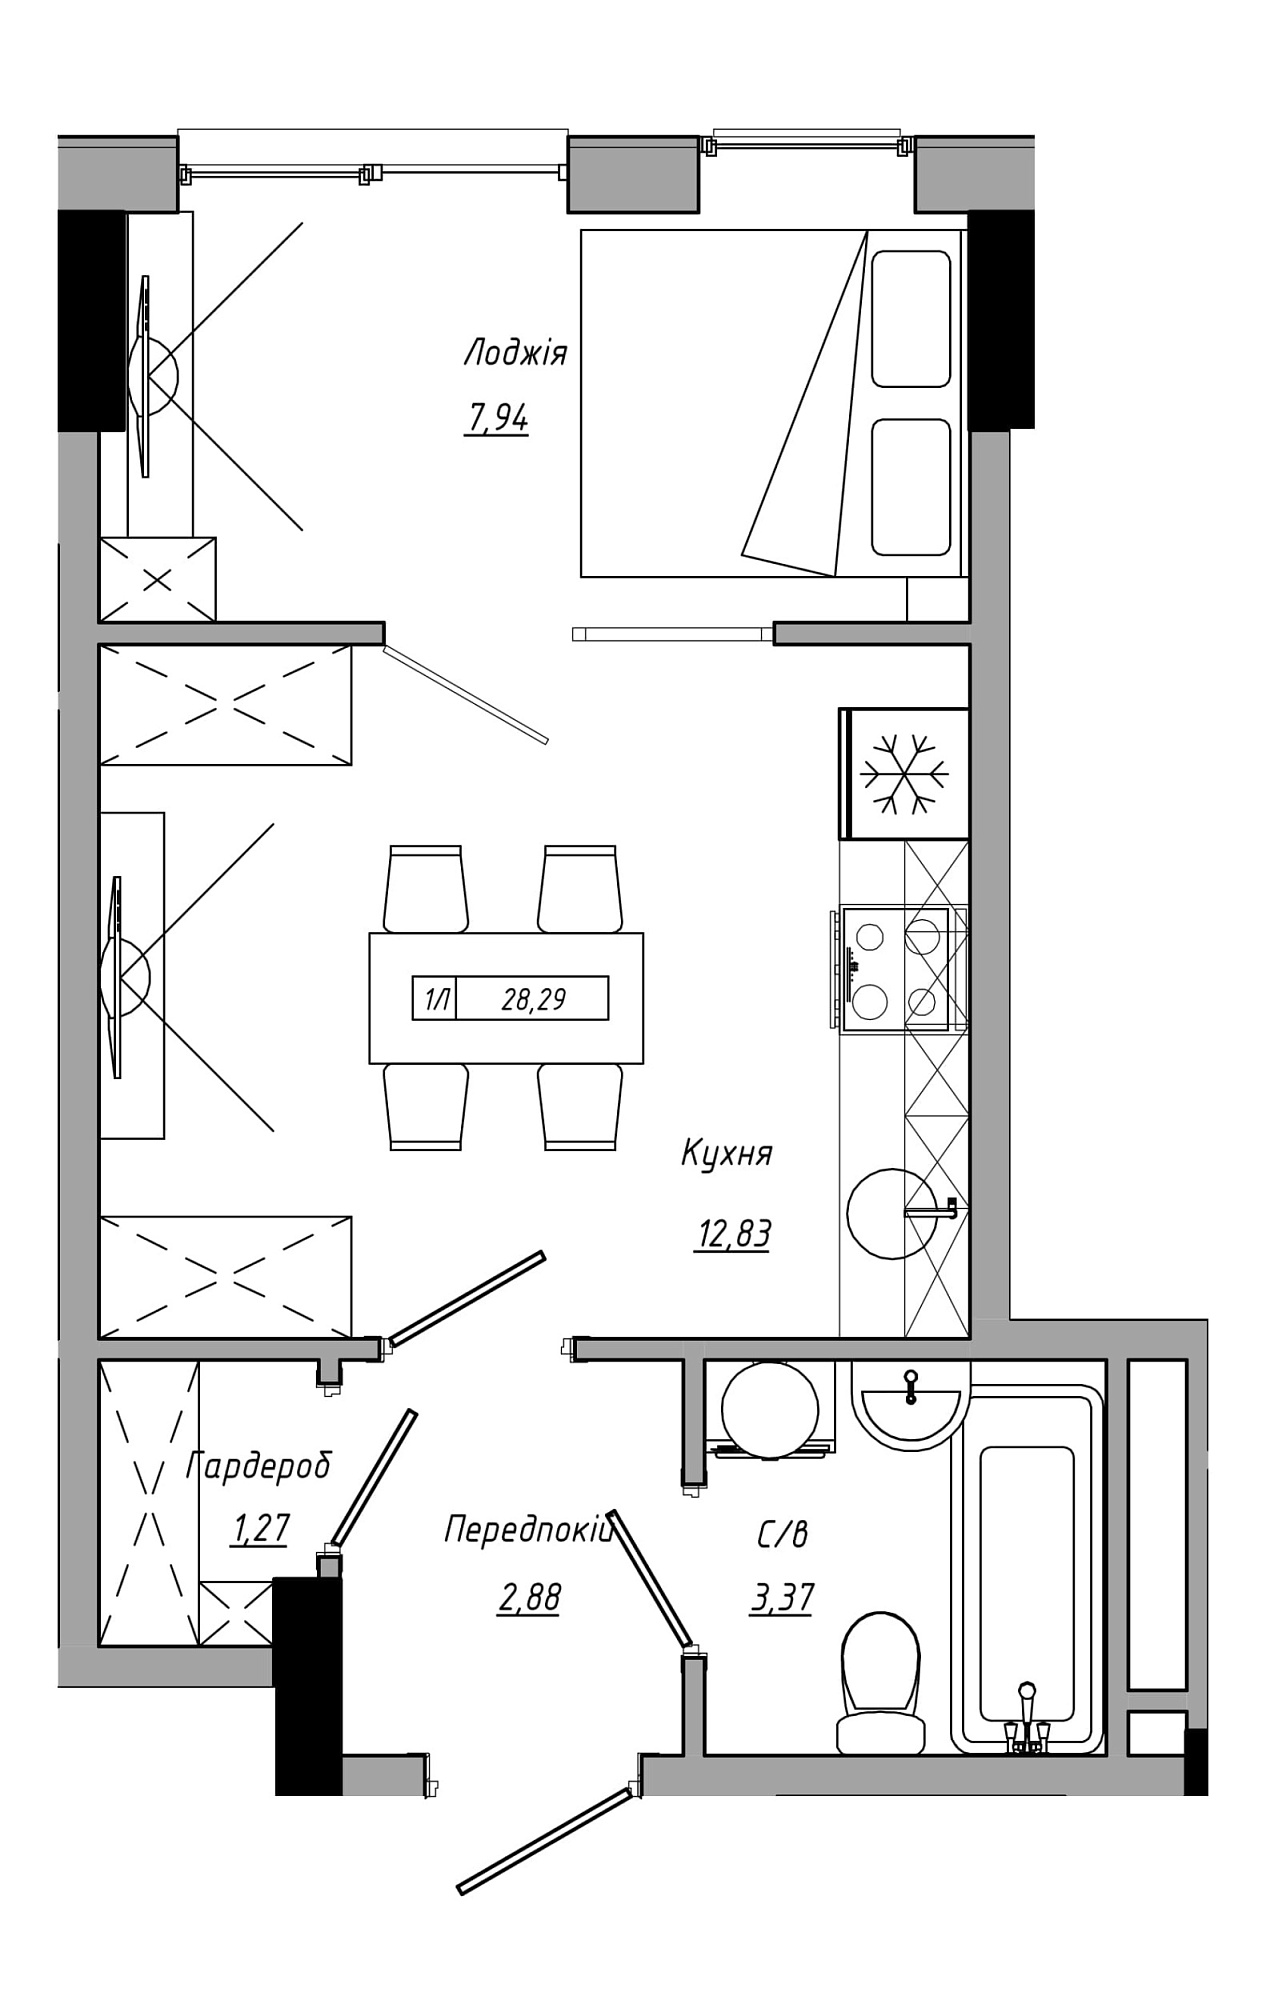 Планування 1-к квартира площею 28.29м2, AB-21-10/00014.